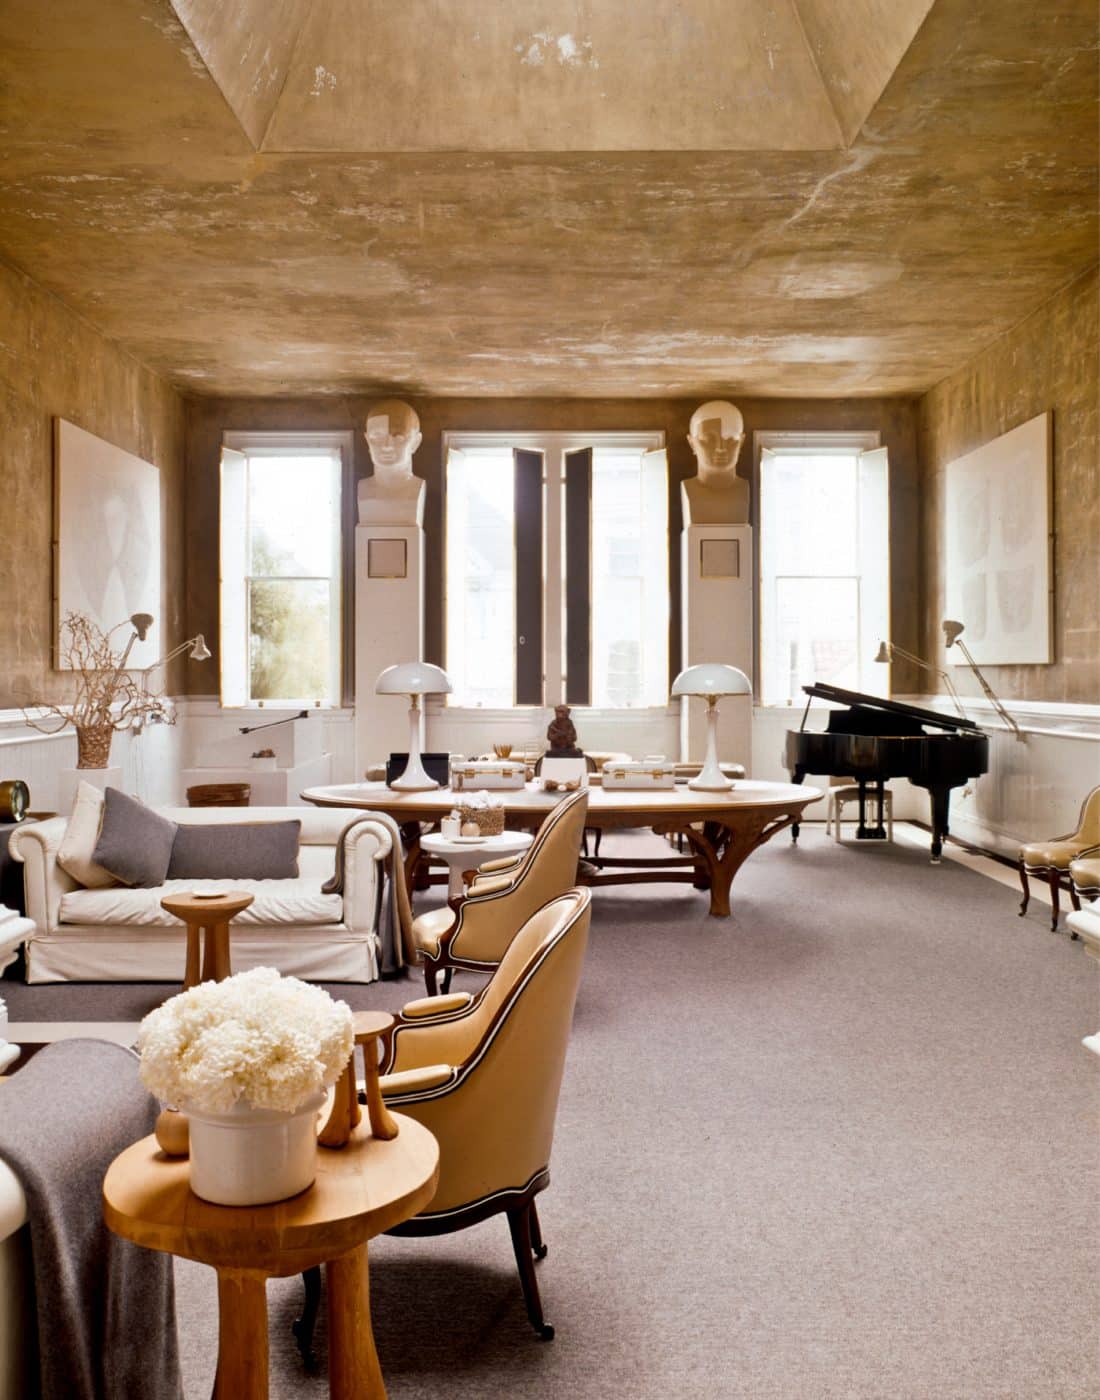 Living room designed by John Dickinson